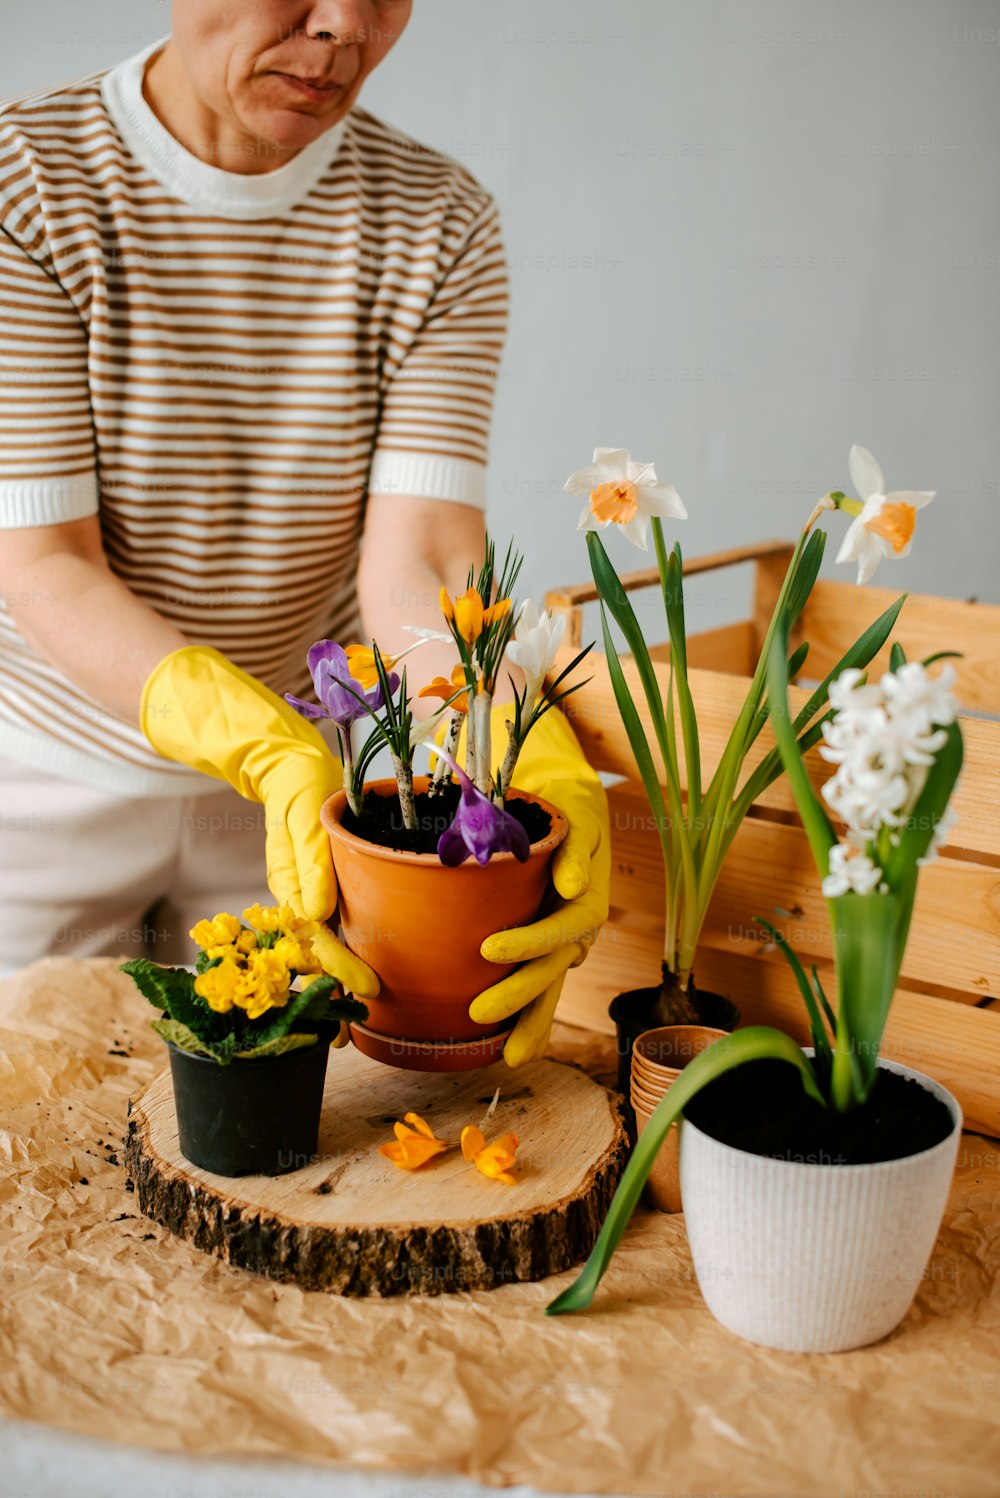 Un uomo con una camicia a righe e guanti gialli sta sistemando i fiori